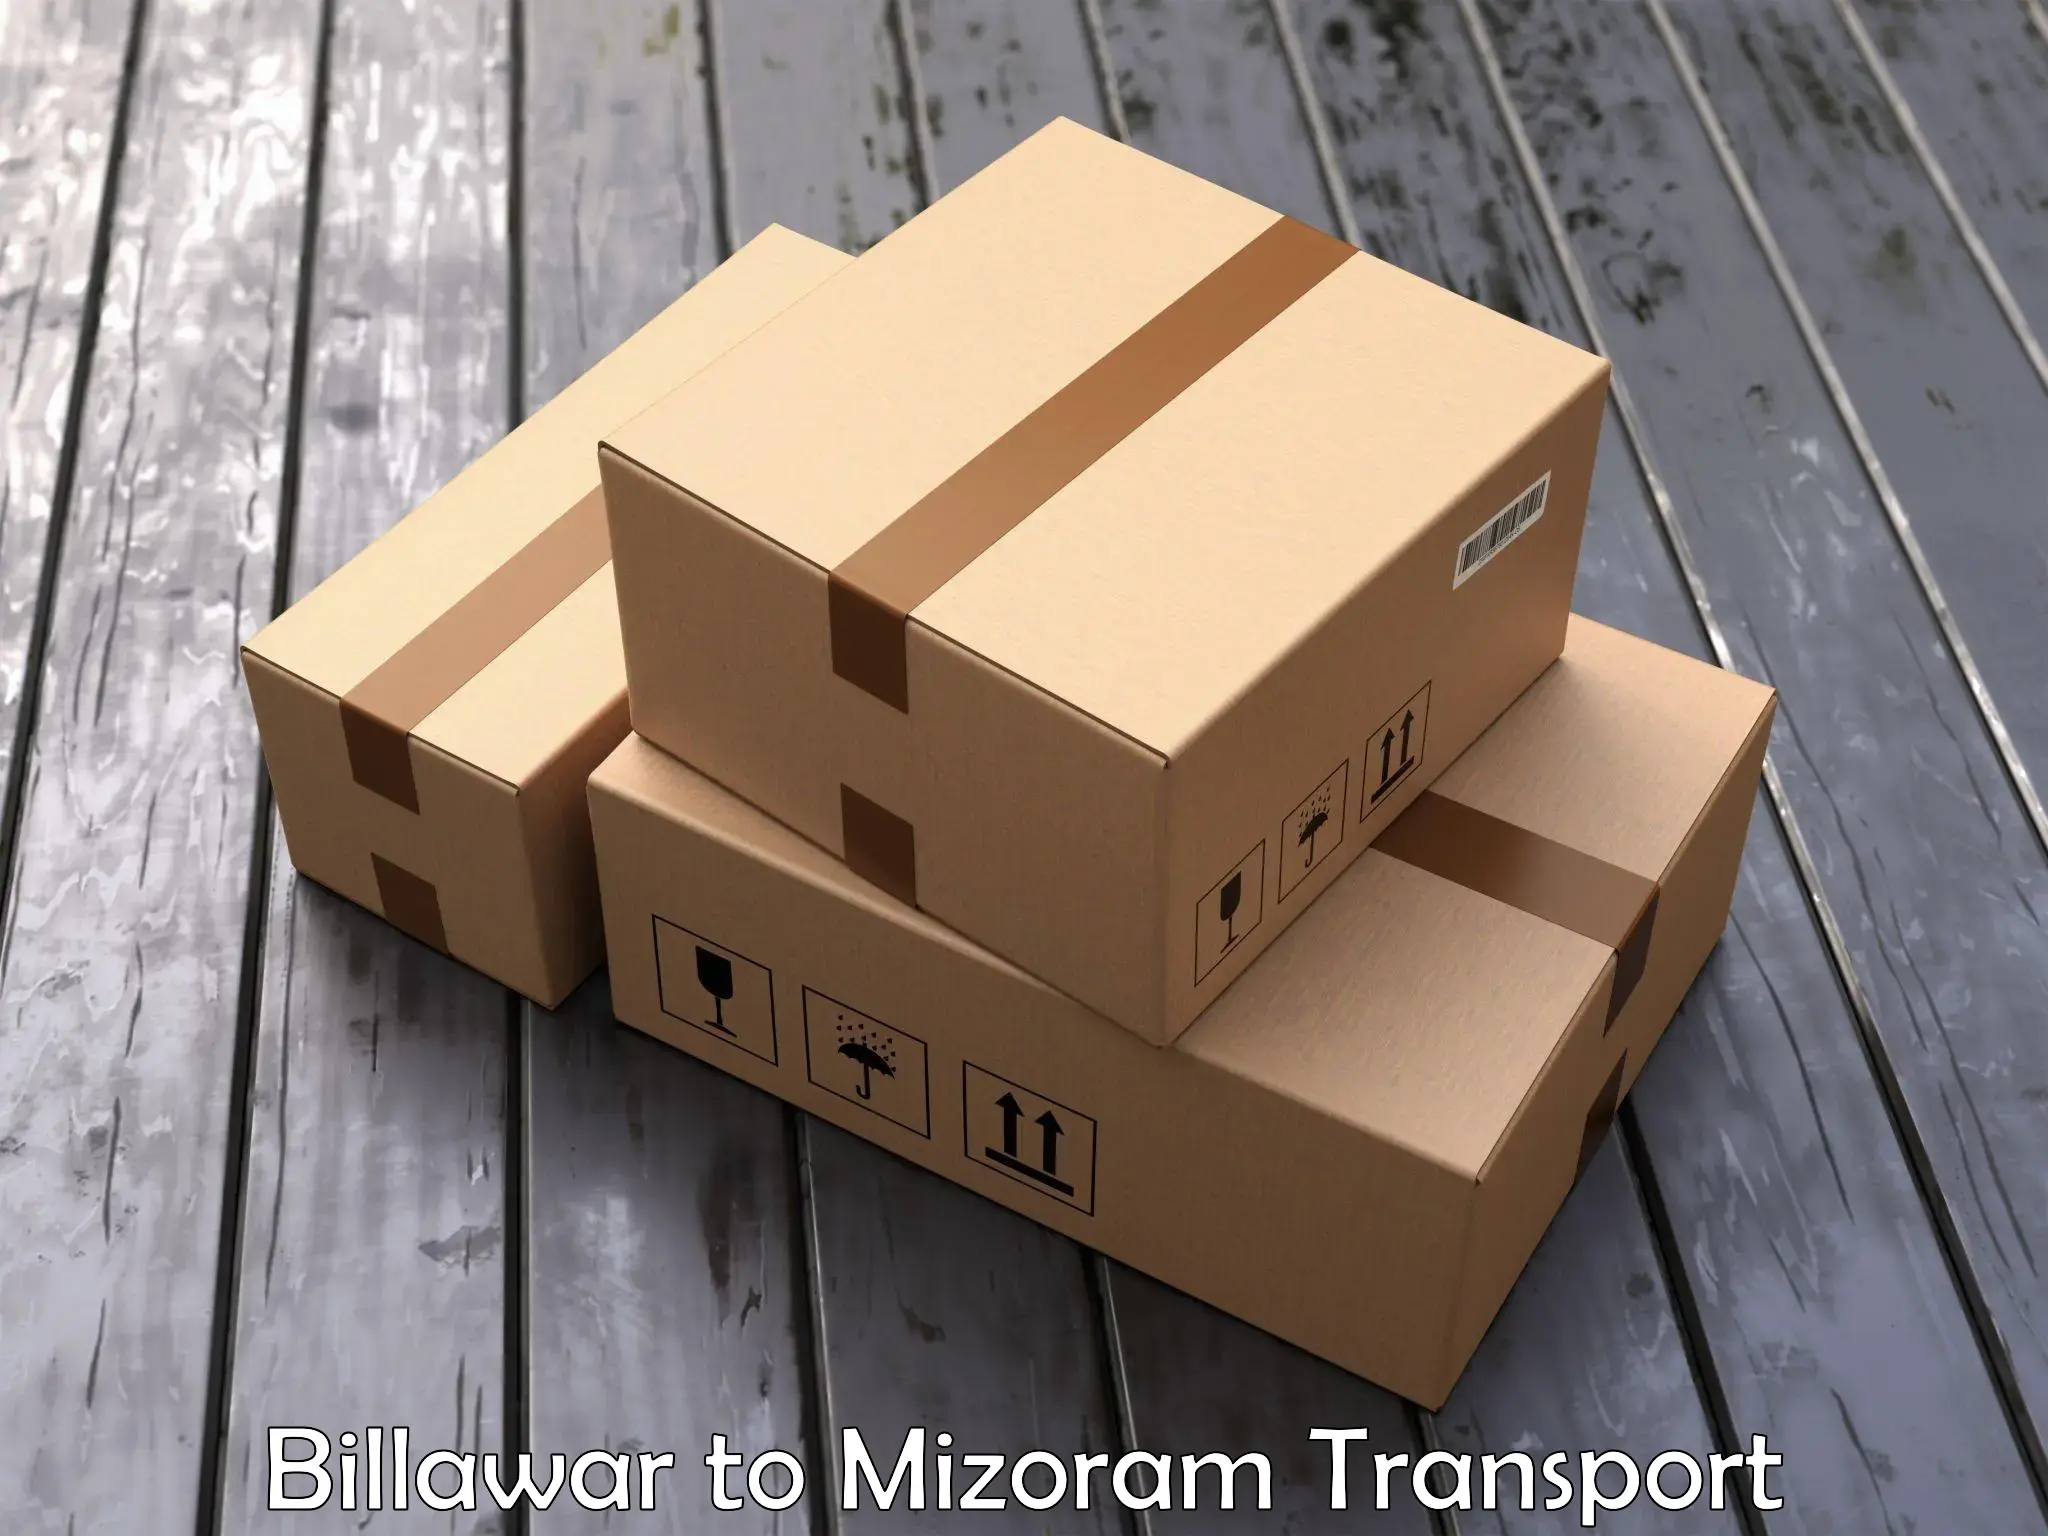 Transport in sharing Billawar to Darlawn